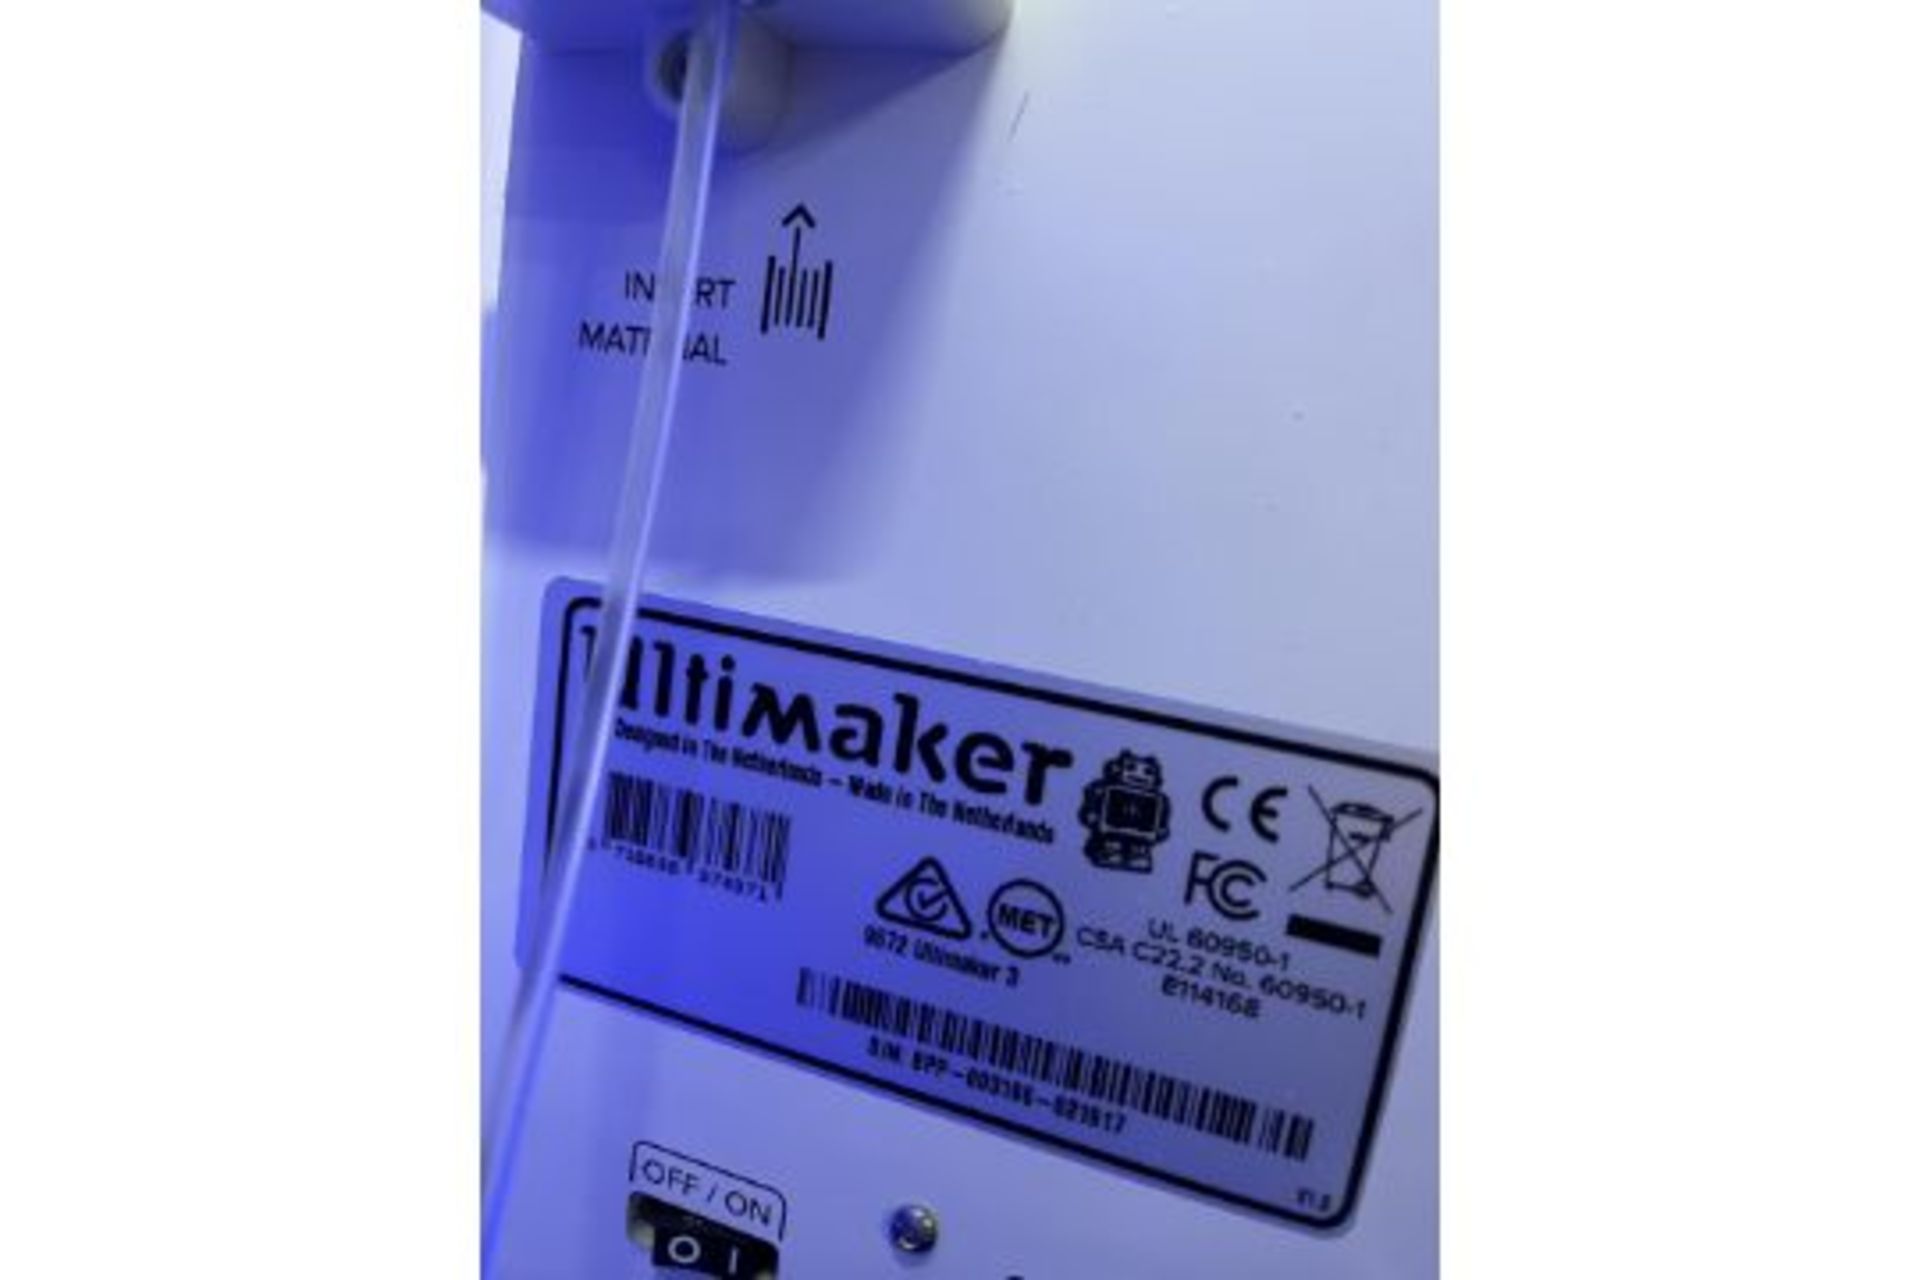 Ultimaker Model 3 3D printer - Image 5 of 5